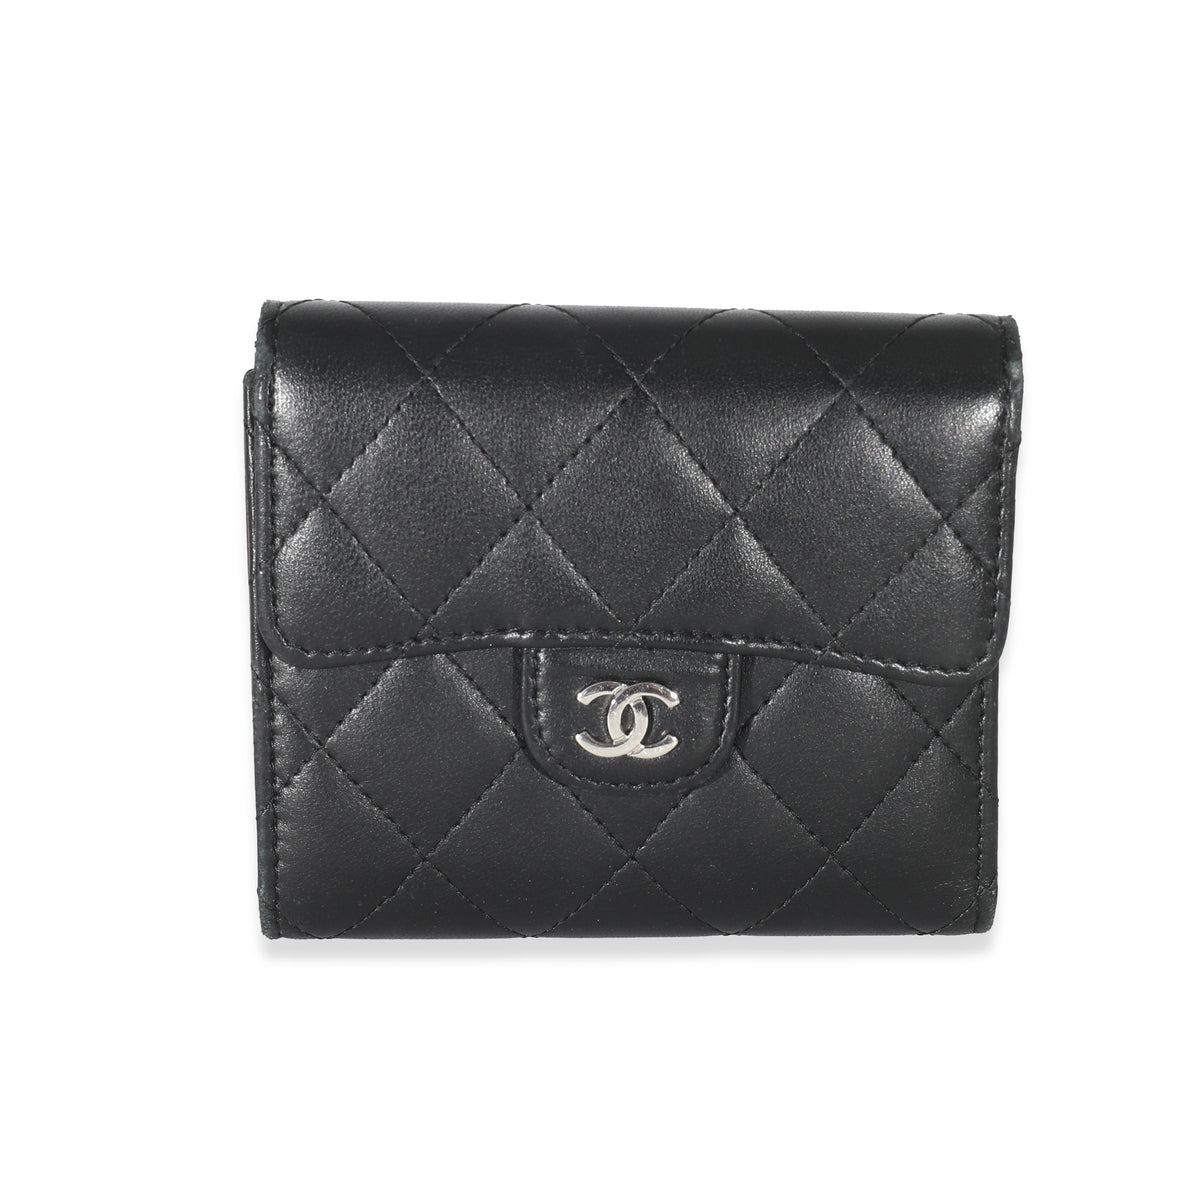 Chanel flap card case comparison